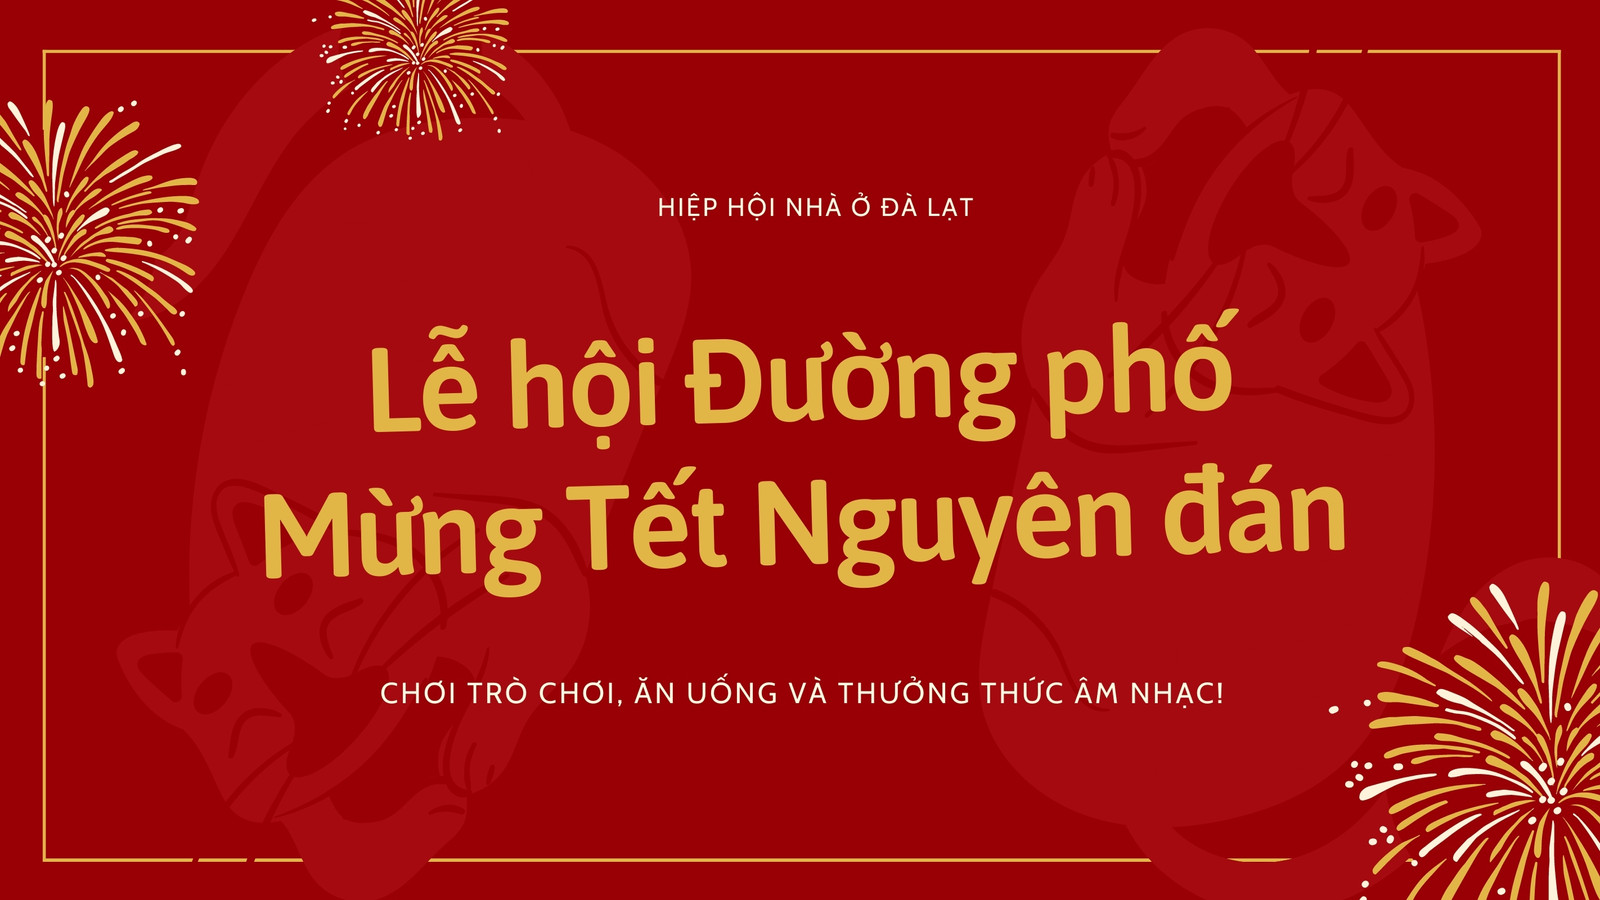 Video Tết này sẽ khiến bạn đầy cảm xúc với những hình ảnh về gia đình sum vầy, những màn múa lân tuyệt đẹp, và cả không khí rộn ràng của ngày Tết. Không nên bỏ qua cơ hội cảm nhận tinh hoa văn hóa Việt Nam một cách sâu sắc!